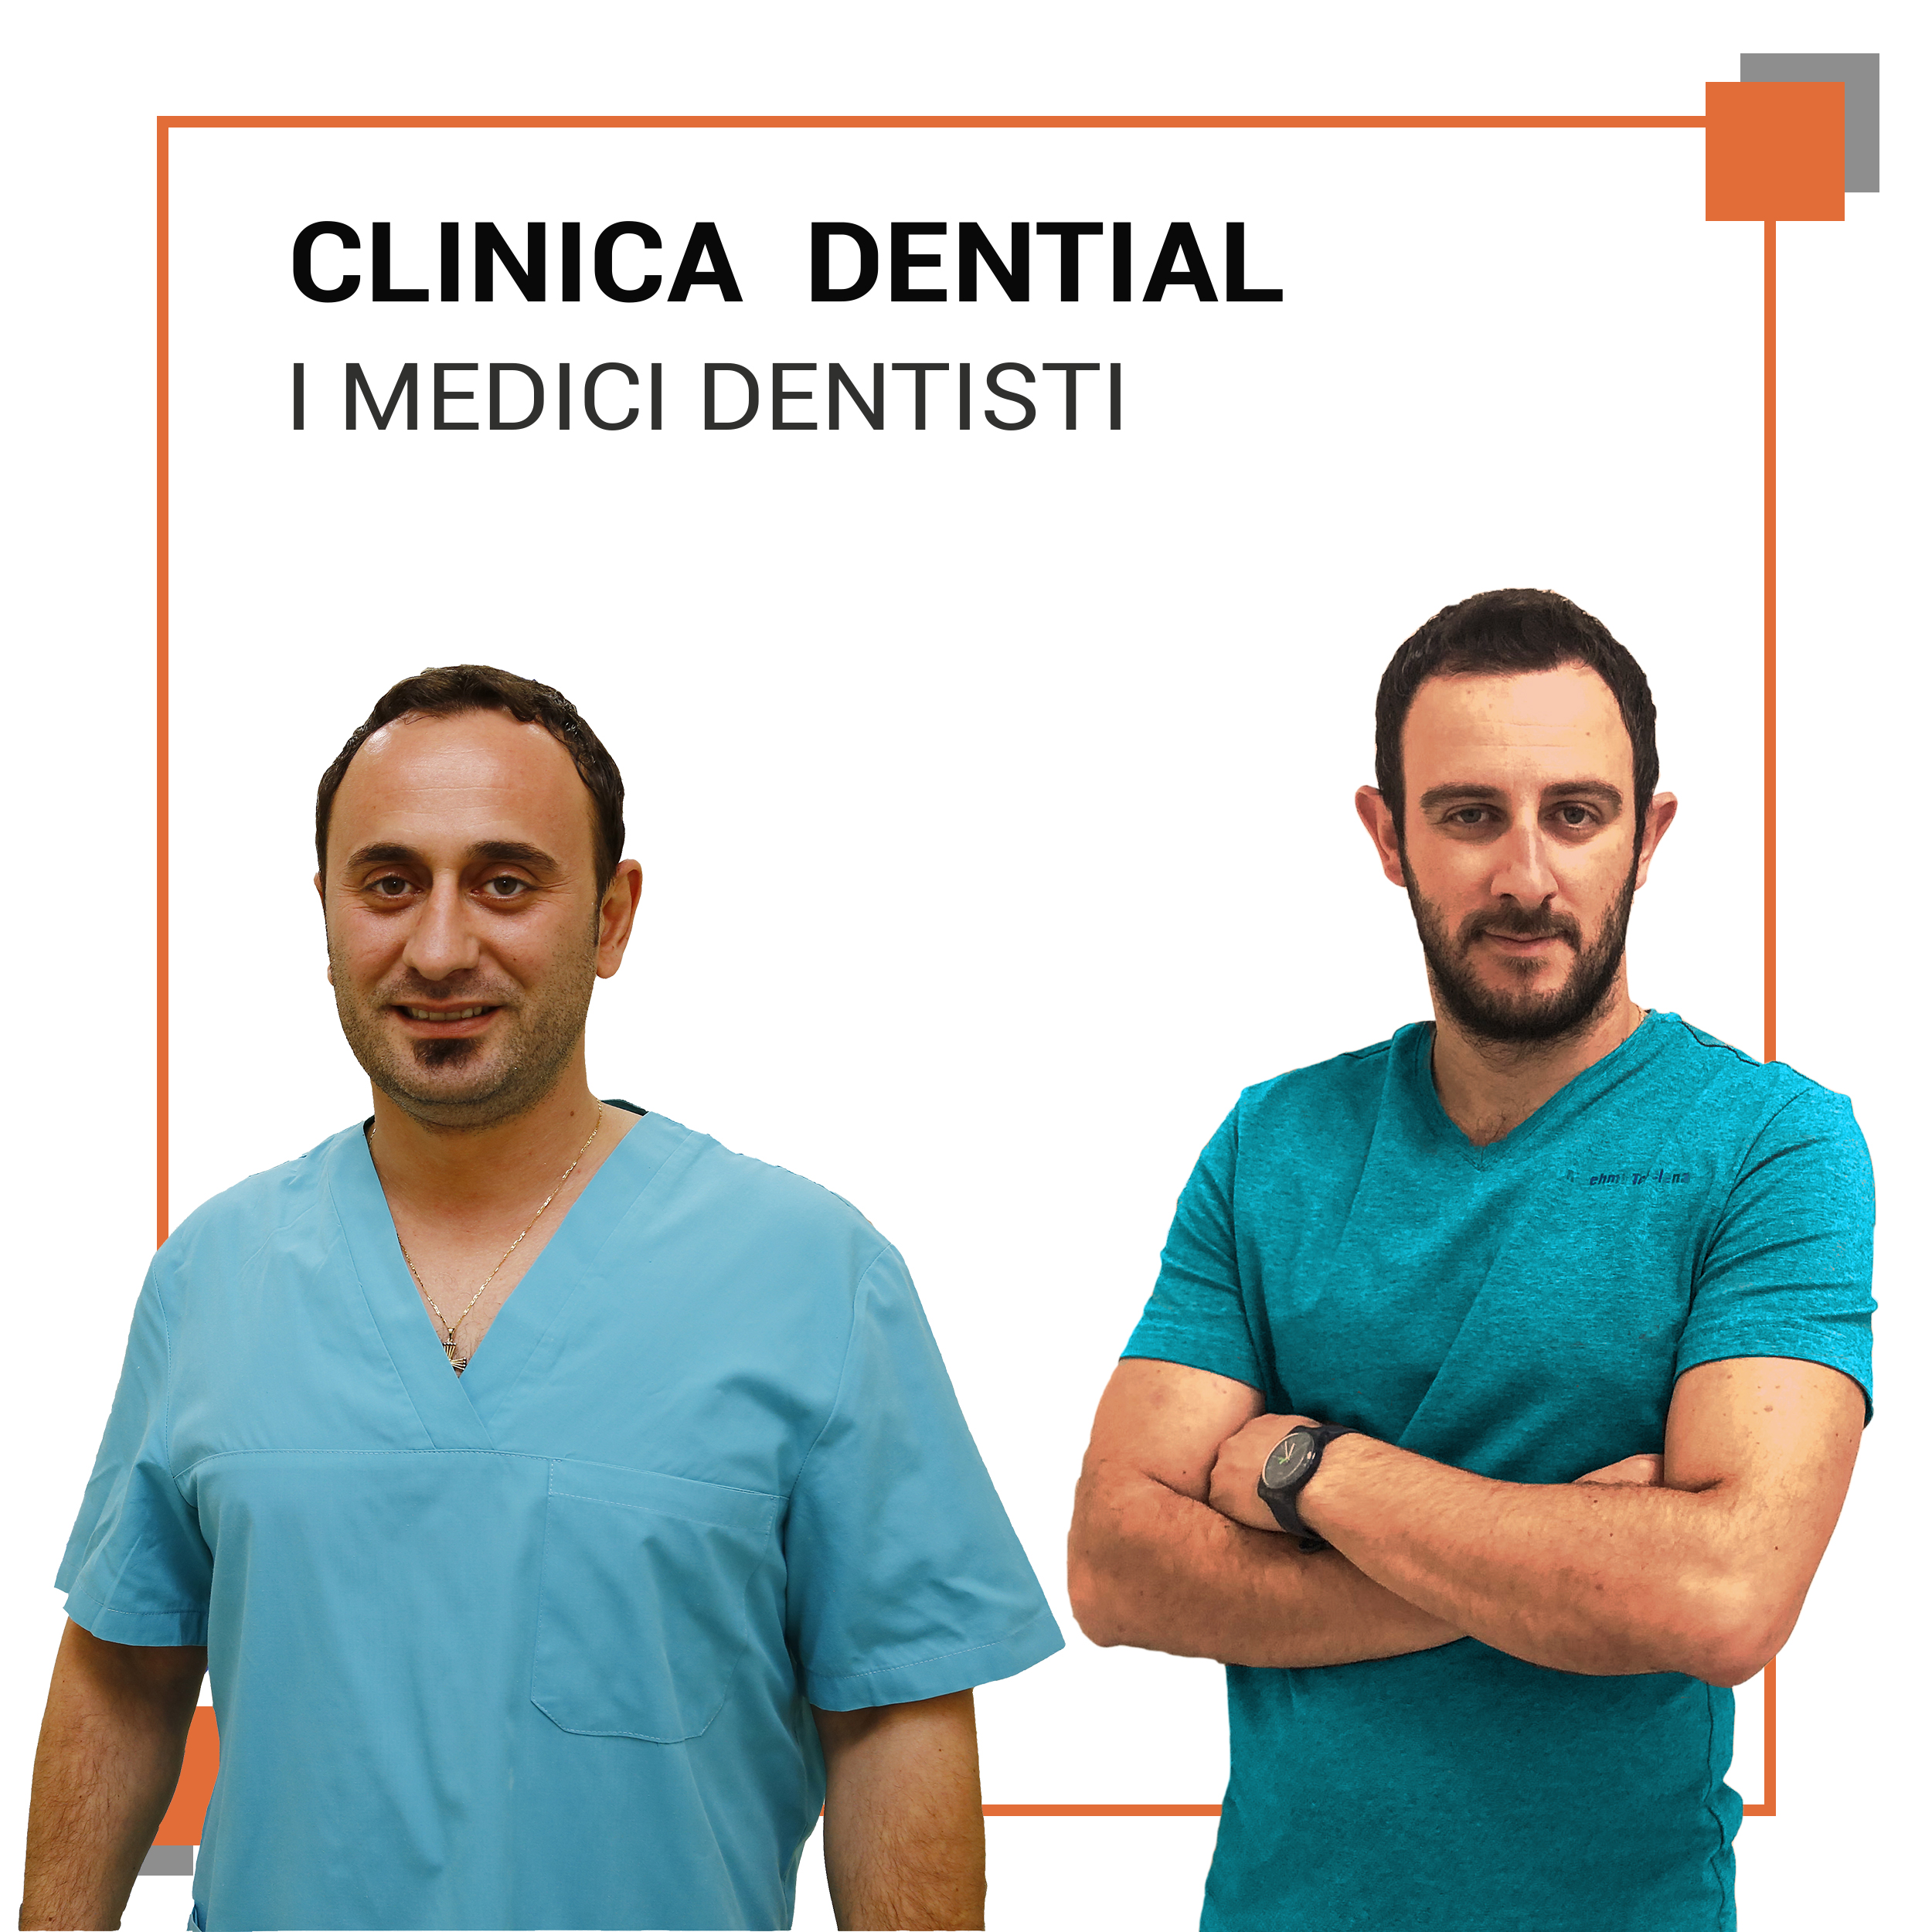 Migliore clinica dentale in Albania come scegliere tra Tirana e Durazzo